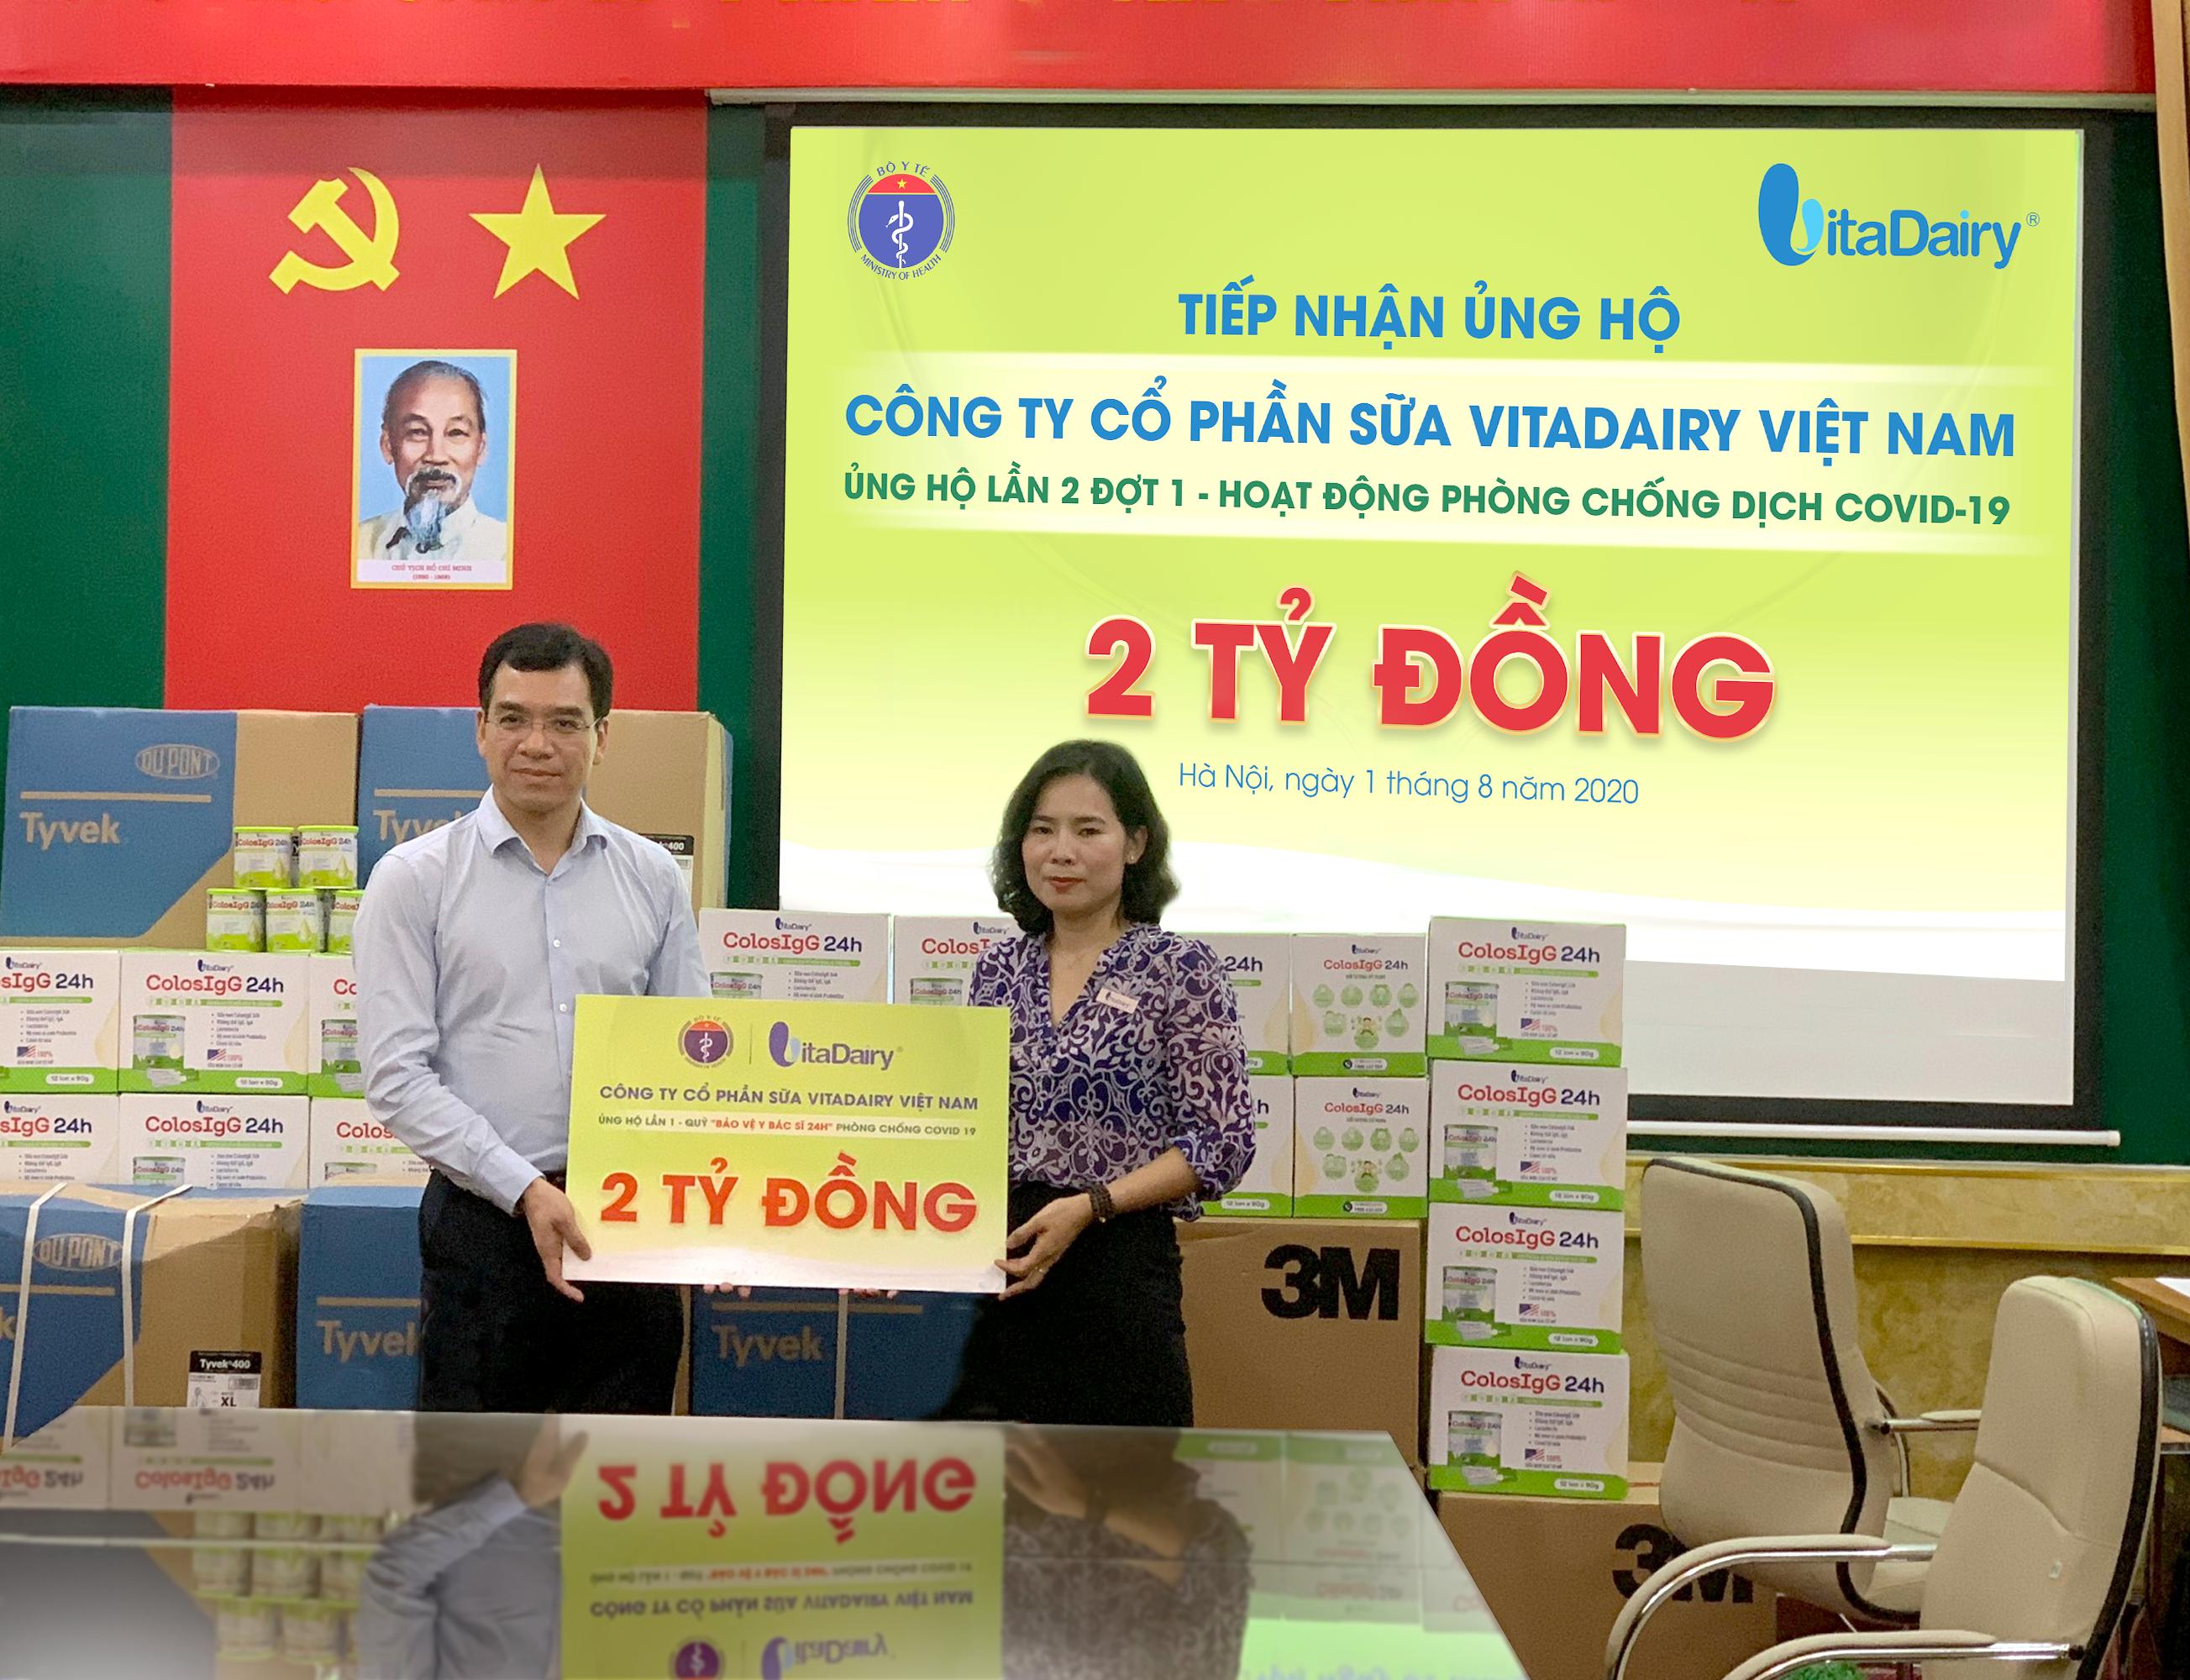 Bà Nguyễn Thị Hà - Tổng giám đốc Công ty VitaDairy trao 2 tỉ đồng cho Bộ Y tế, mở màn chiến dịch Quỹ “Bảo vệ y bác sĩ 24h” lần này